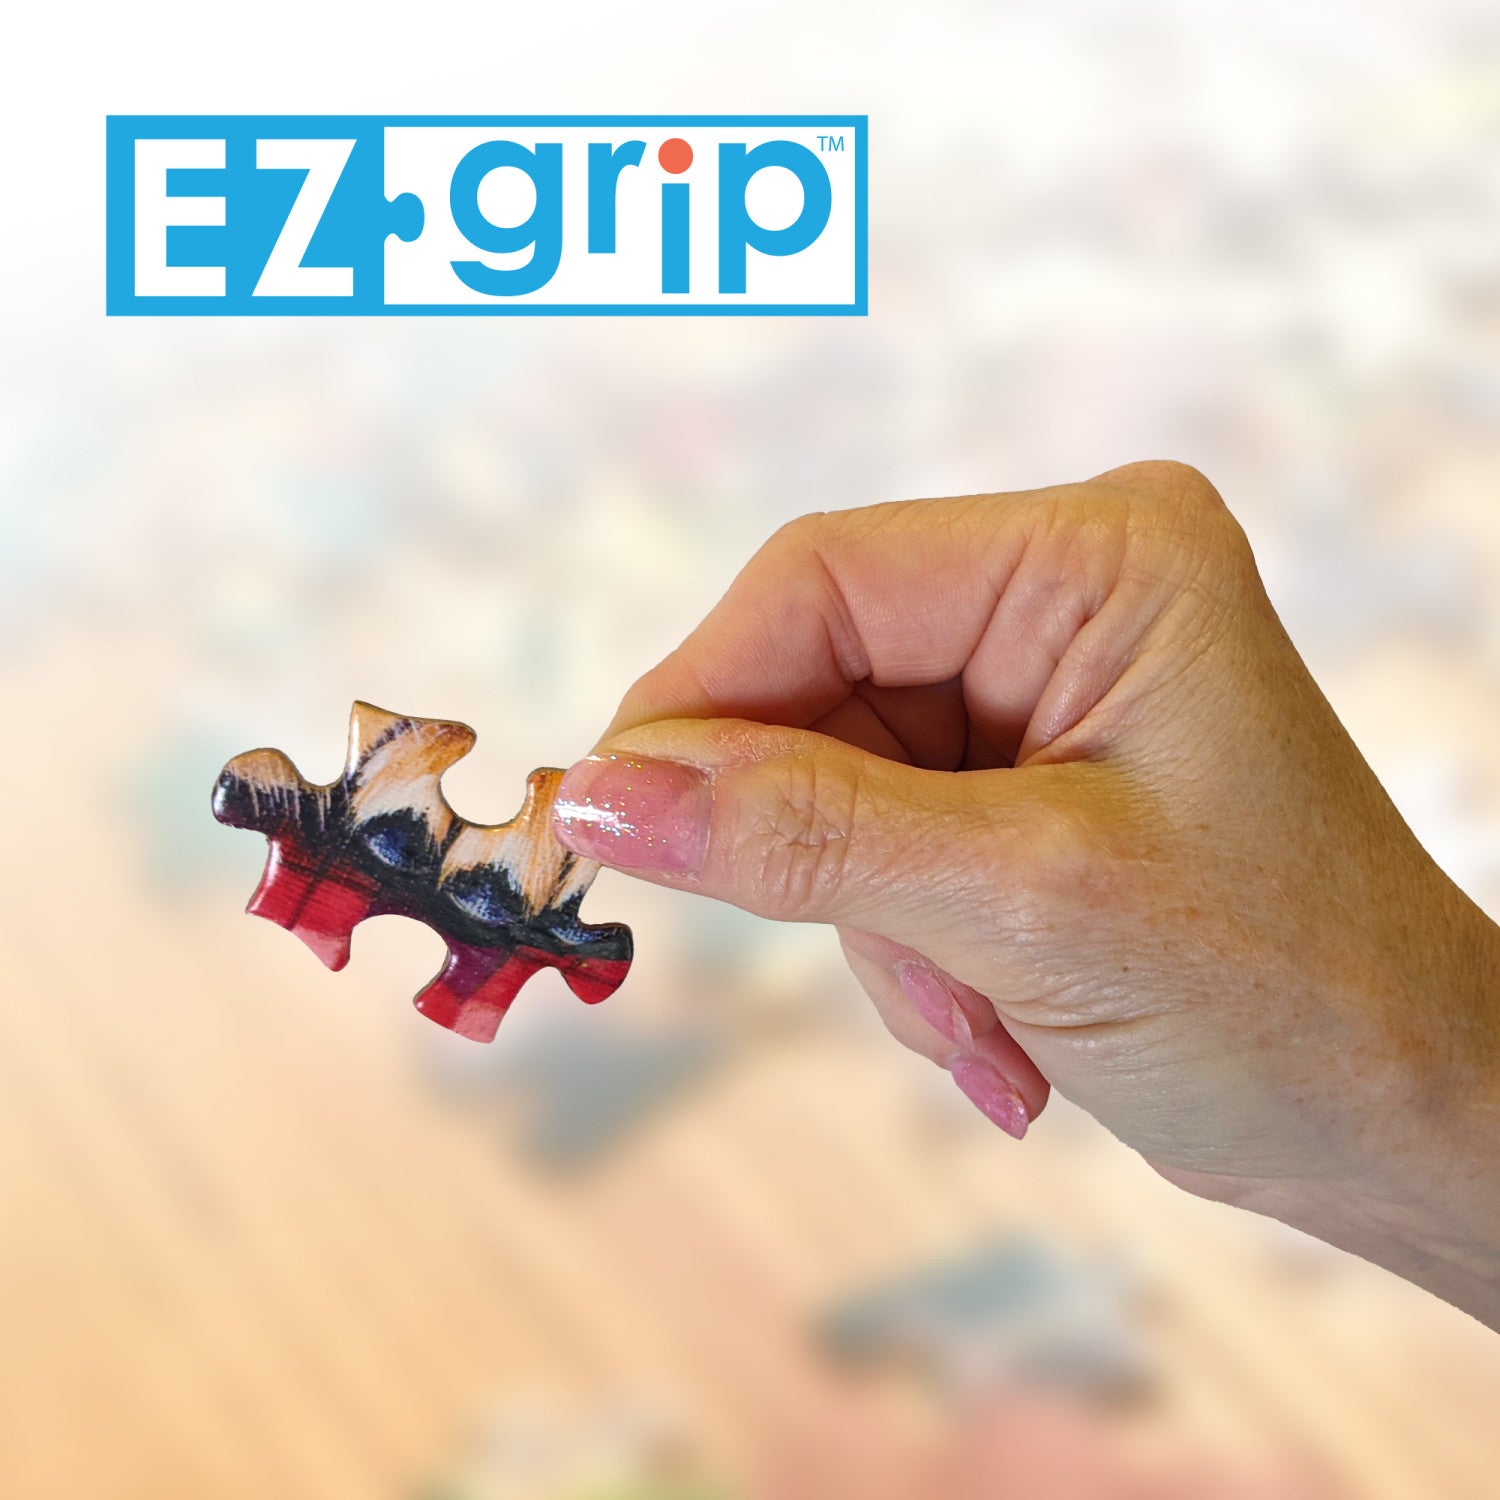 Trendz - Sushi Surprise 300 Piece EZ Grip Jigsaw Puzzle